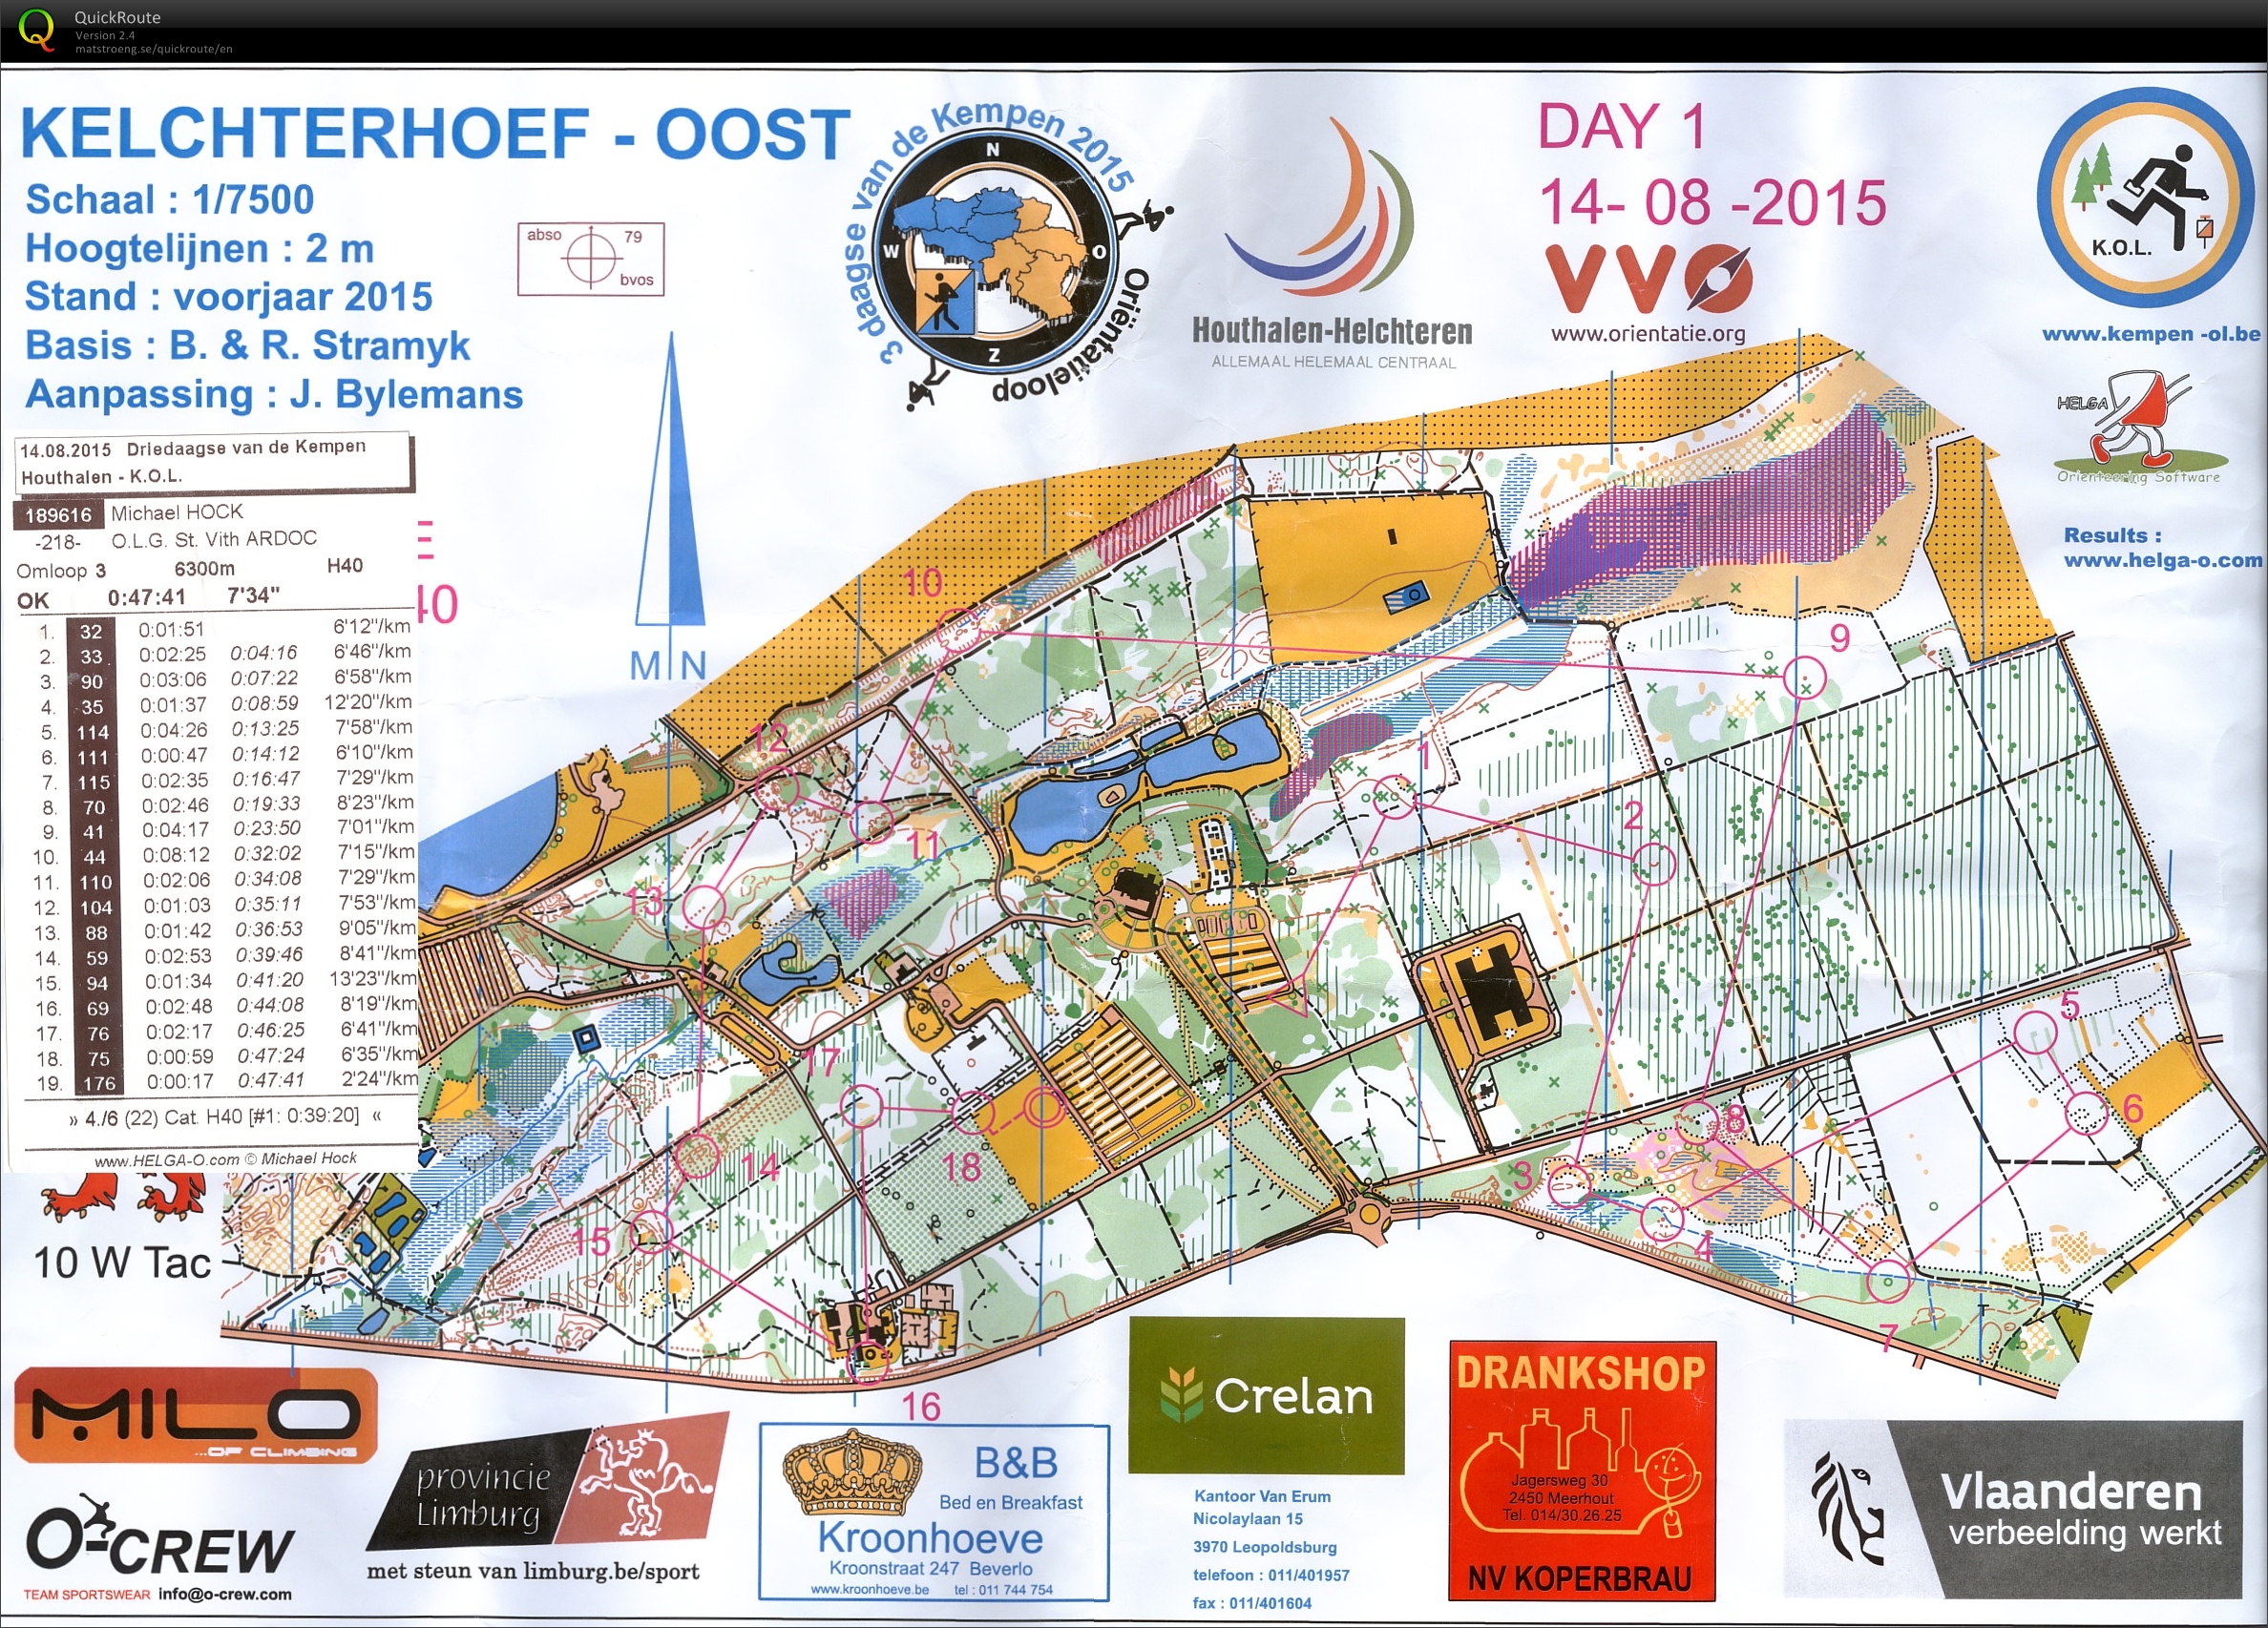 Driedaagse van de Kempen (14-08-2015)